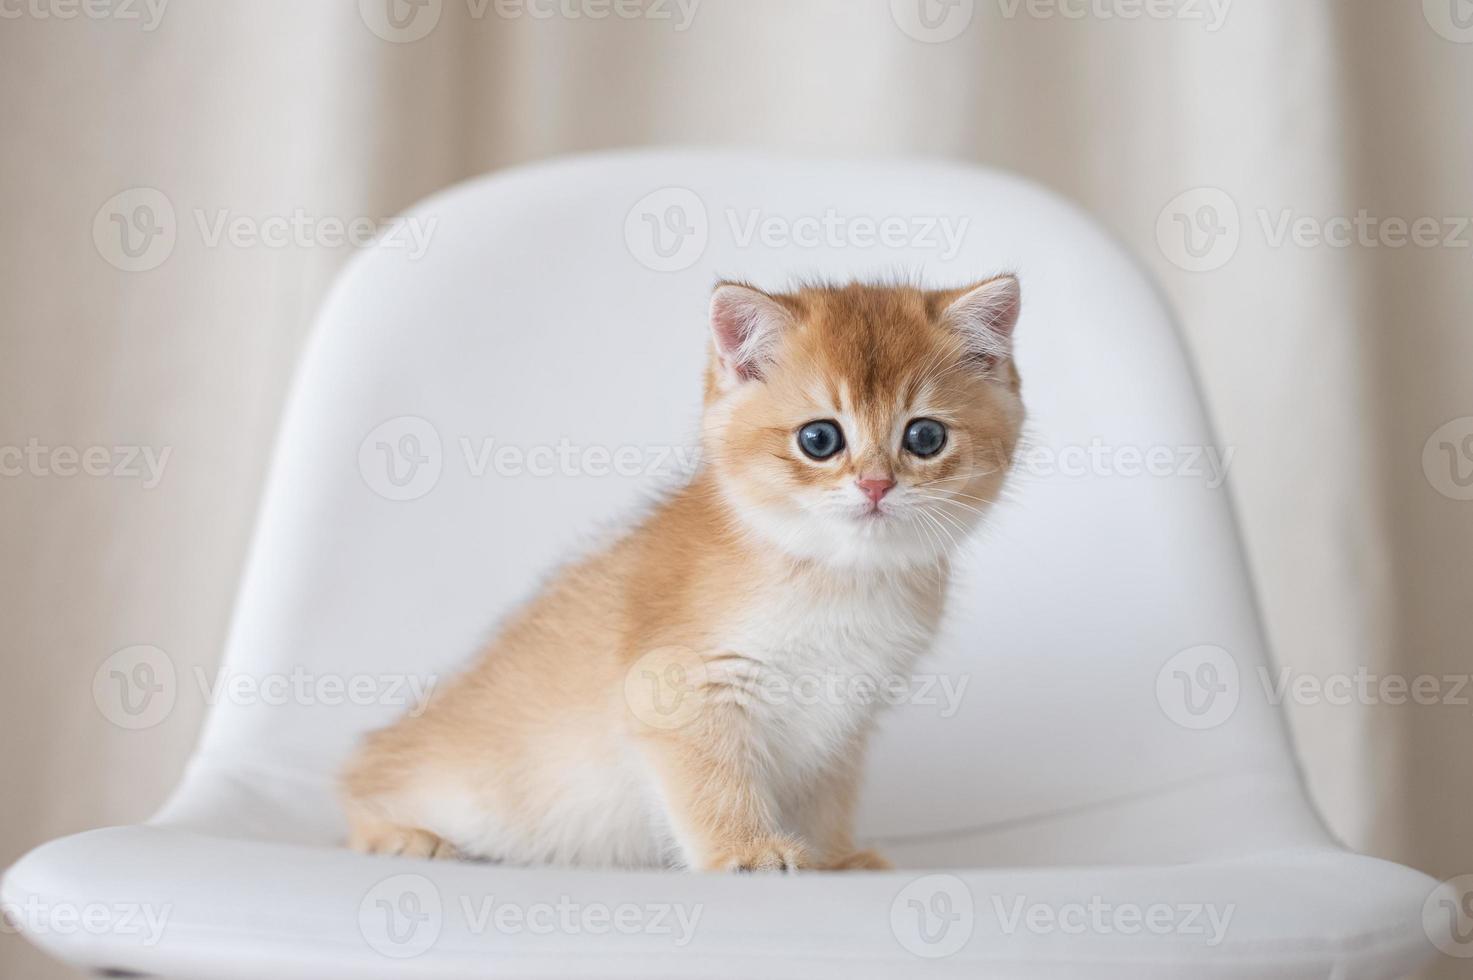 långhårig brittiskt kattungar foto